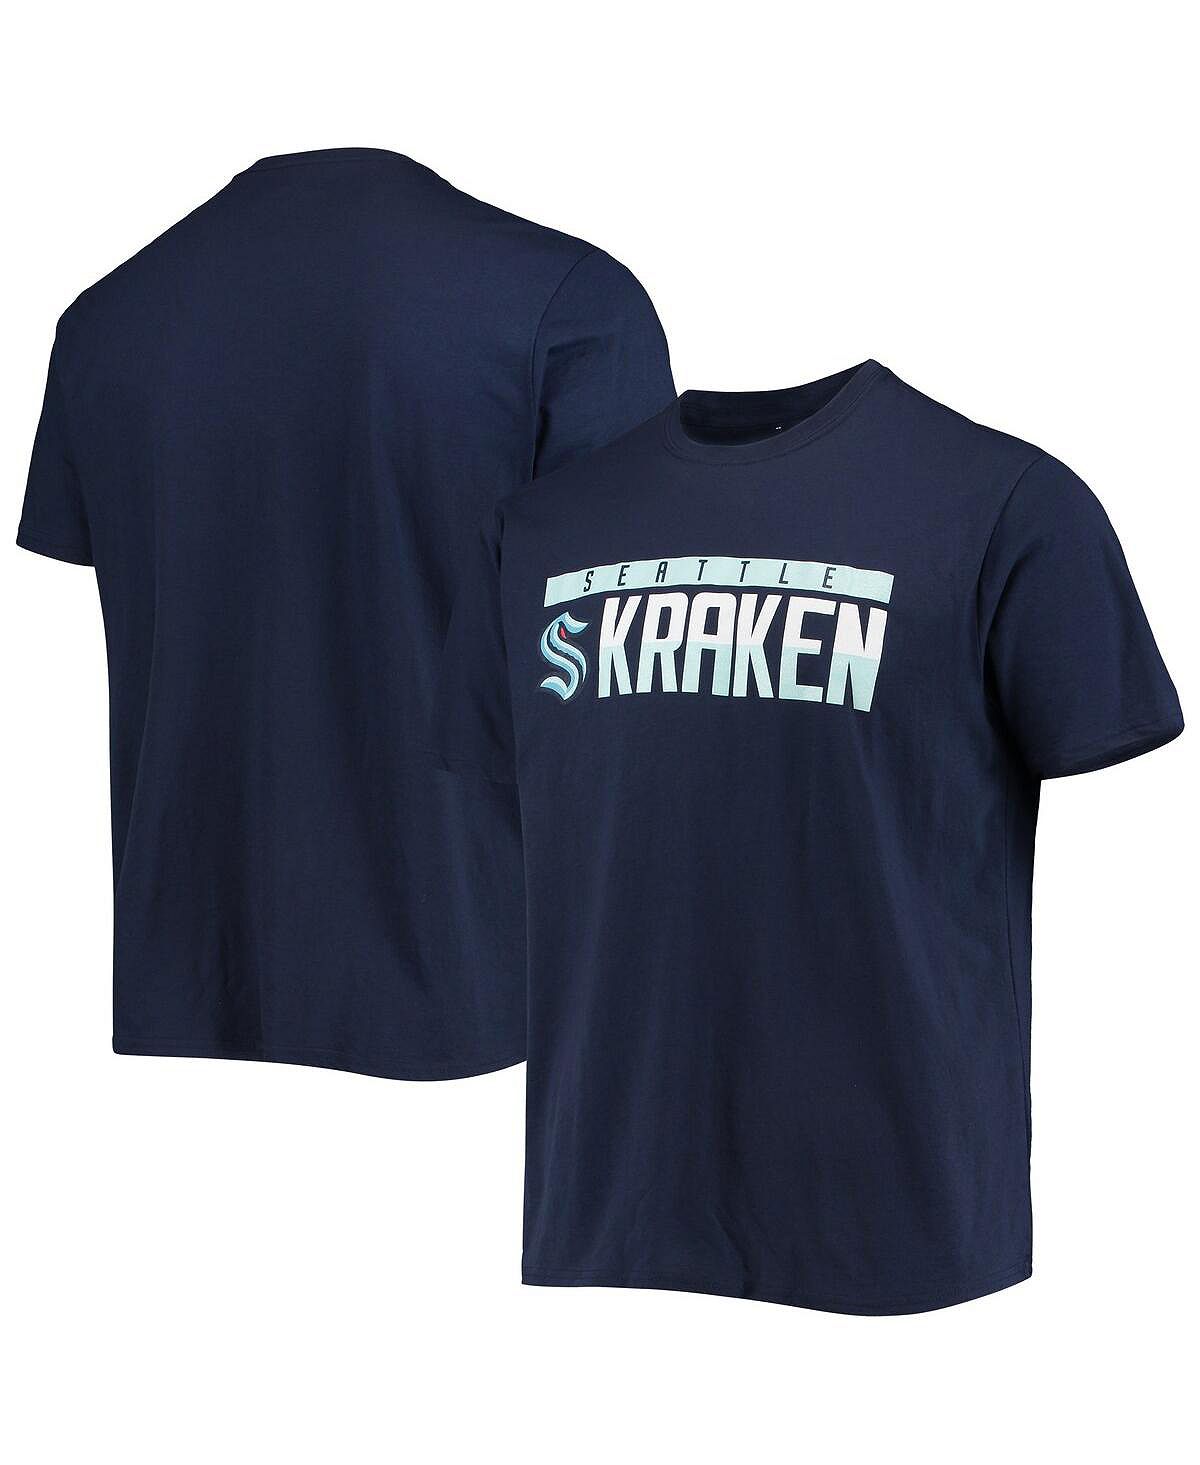 цена Мужская темно-синяя футболка seattle kraken richmond с надписями LevelWear, синий